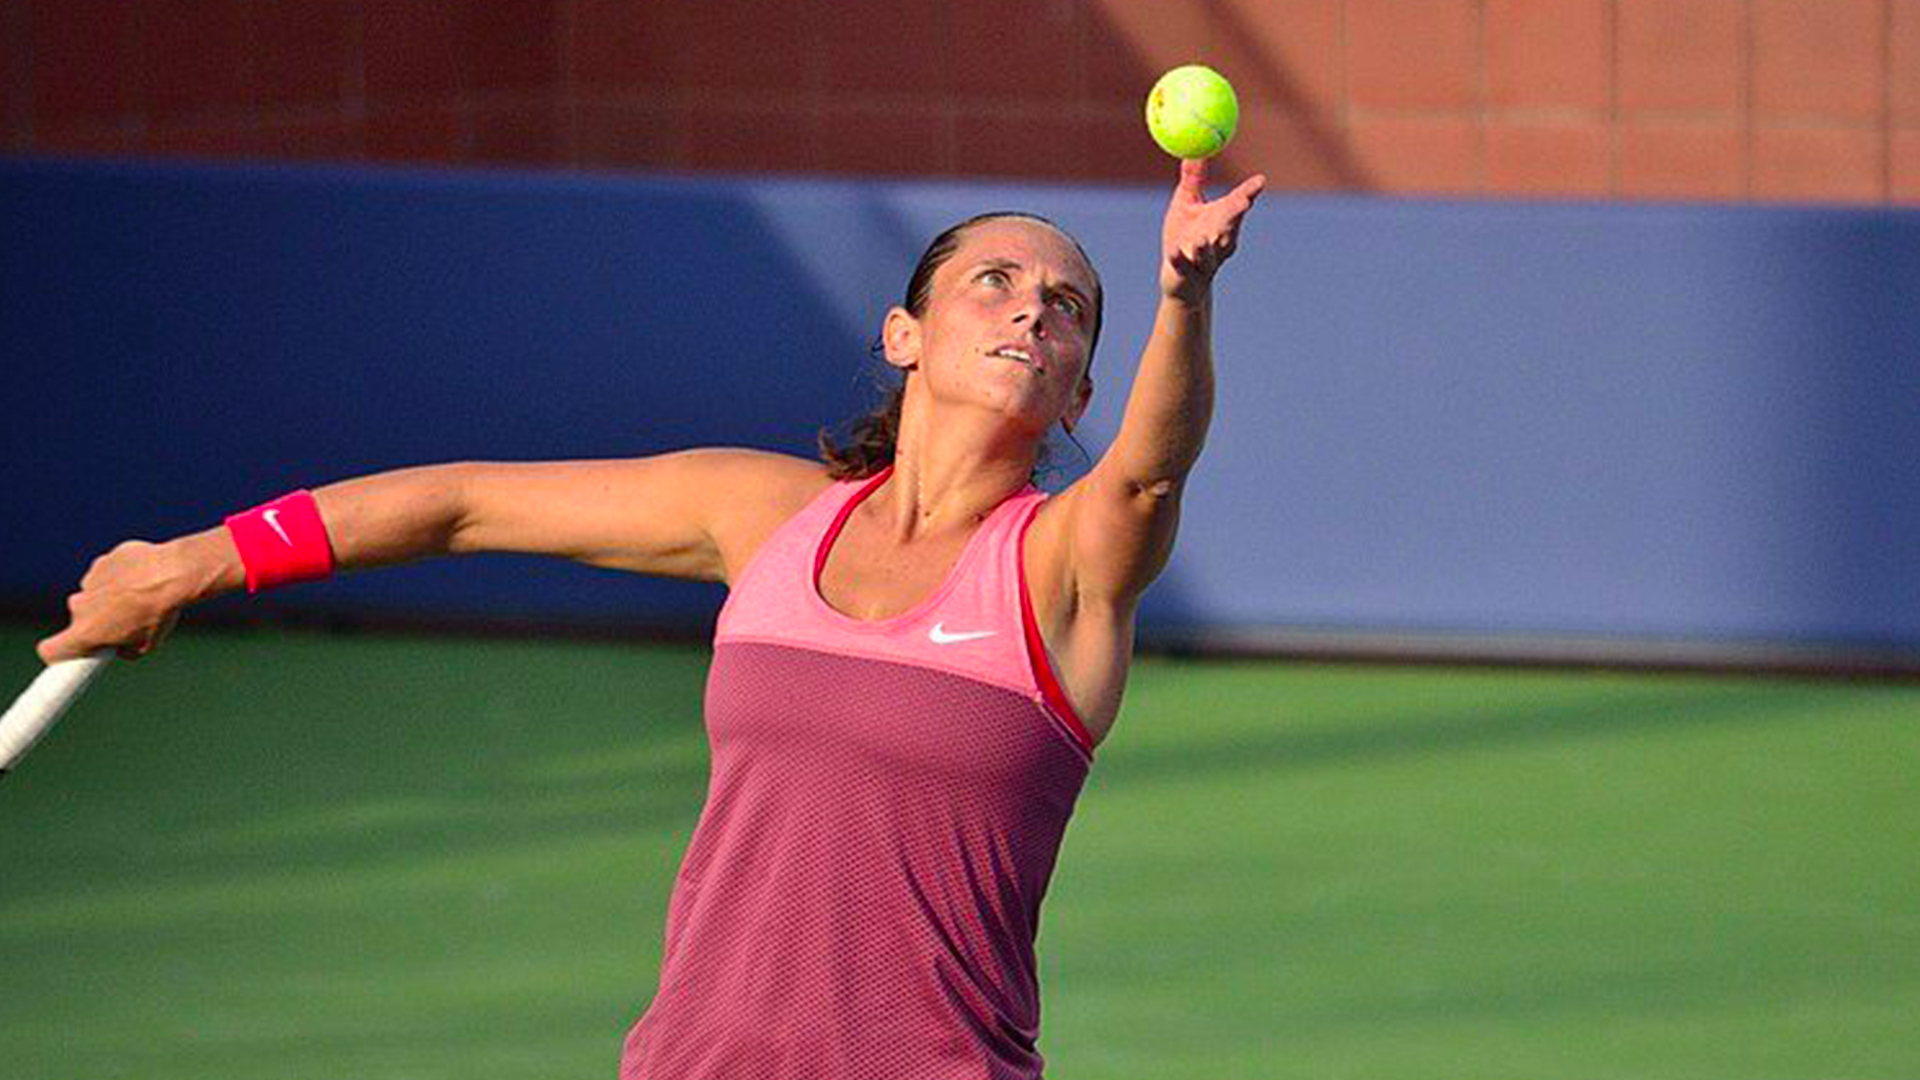 Eroi di Puglia - Roberta Vinci - Tennis